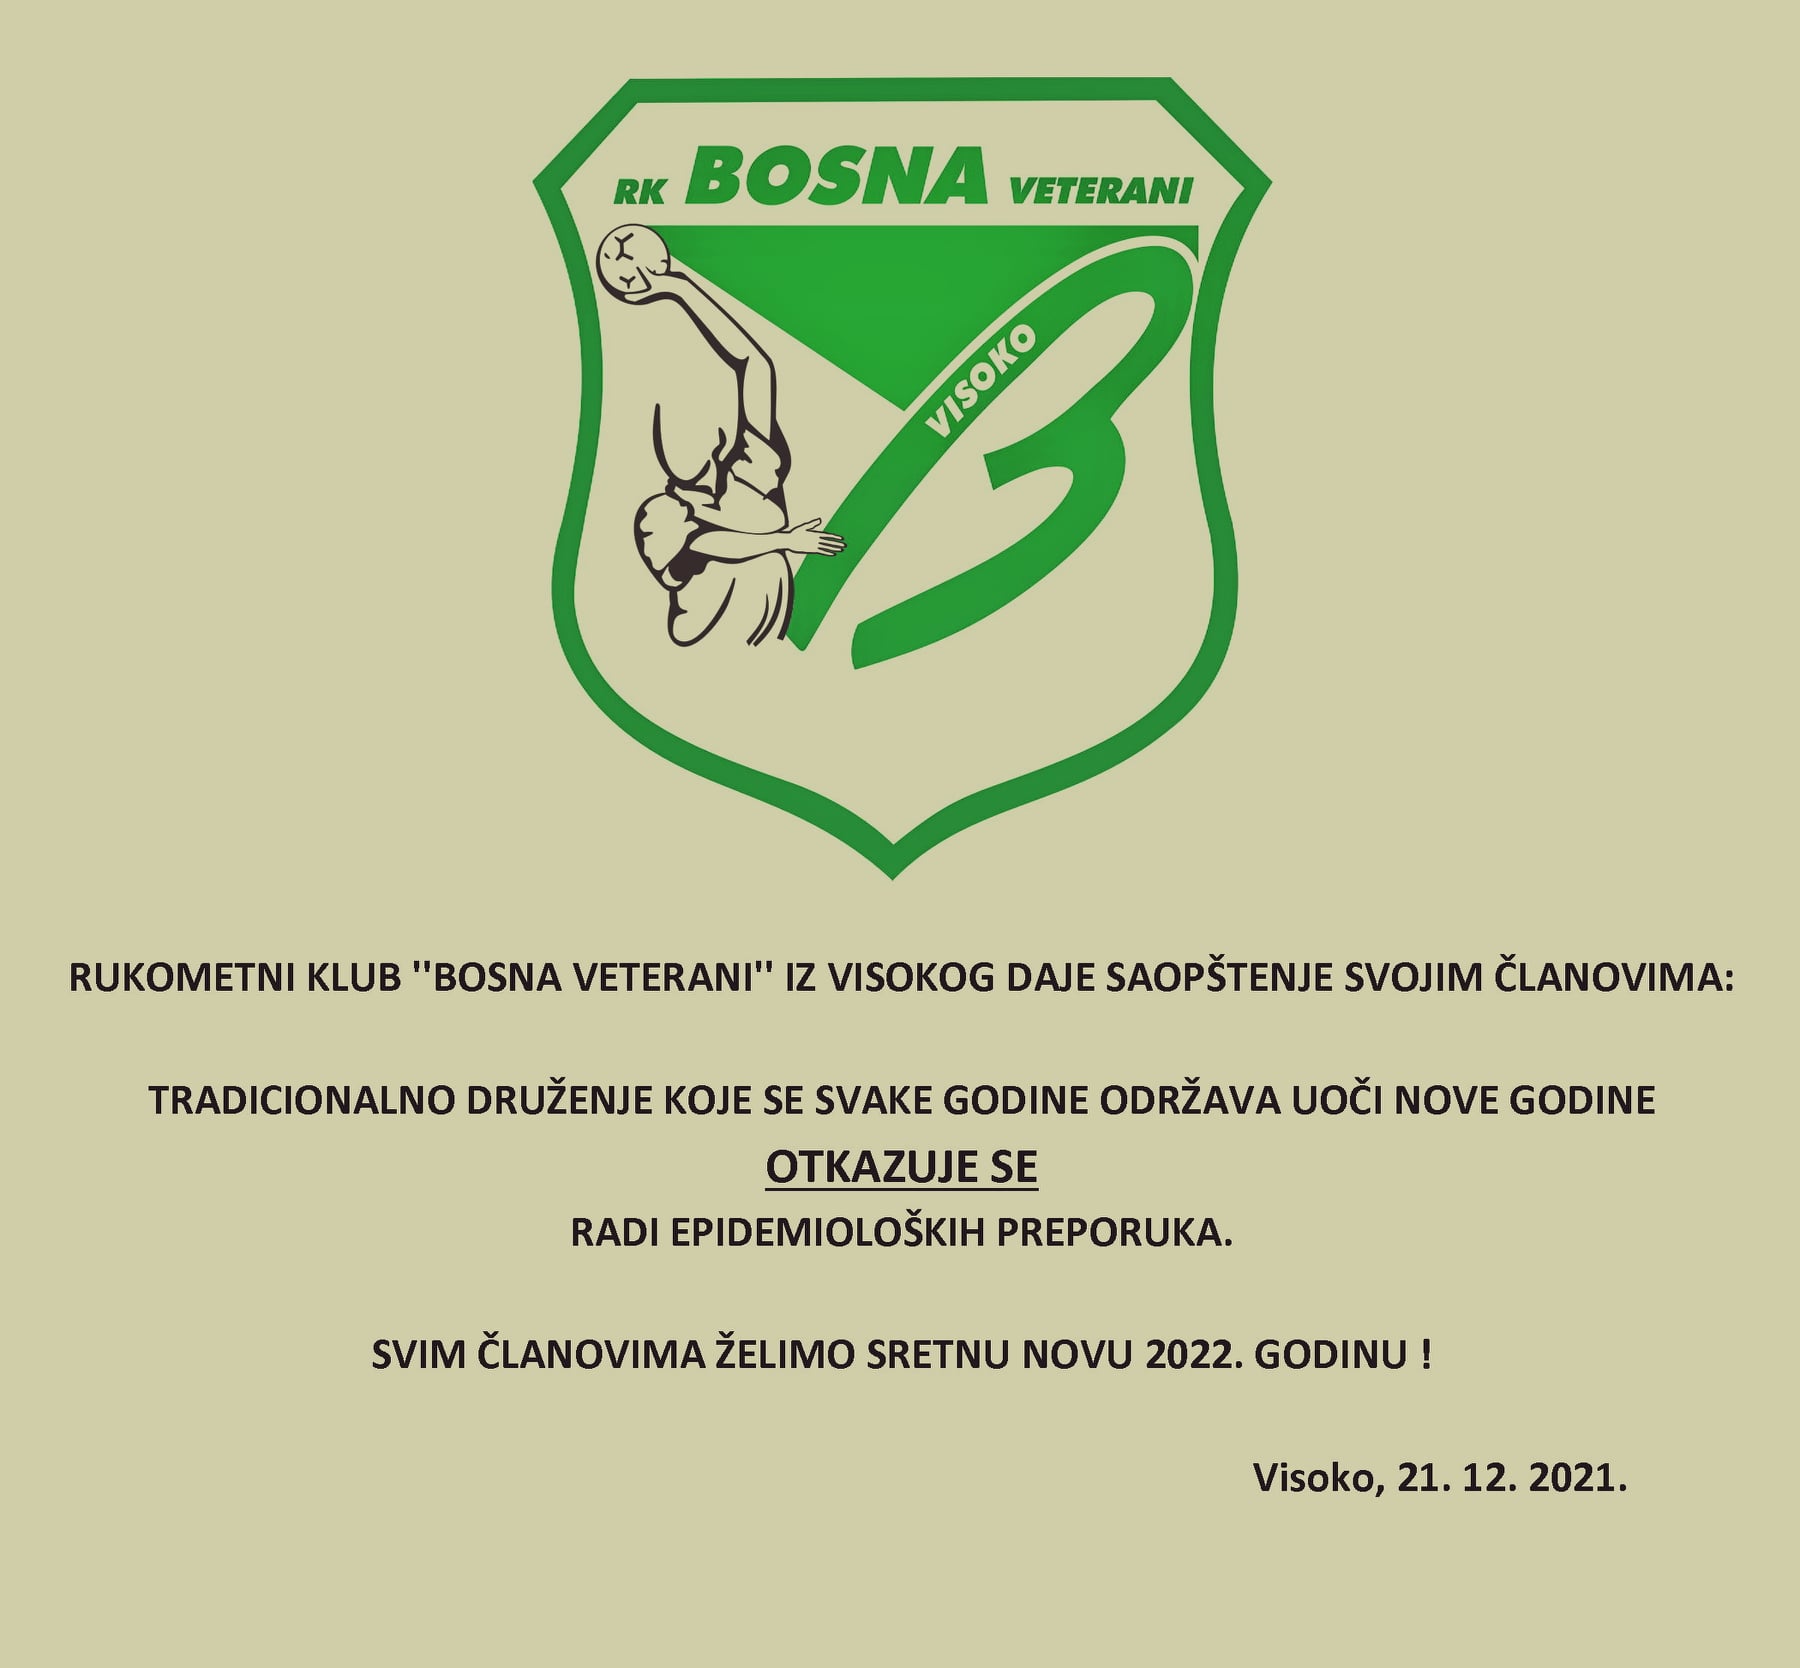 Zbog epidemiološke situacije i ove godine bez tradicionalnog druženja RK “Bosna veterani”